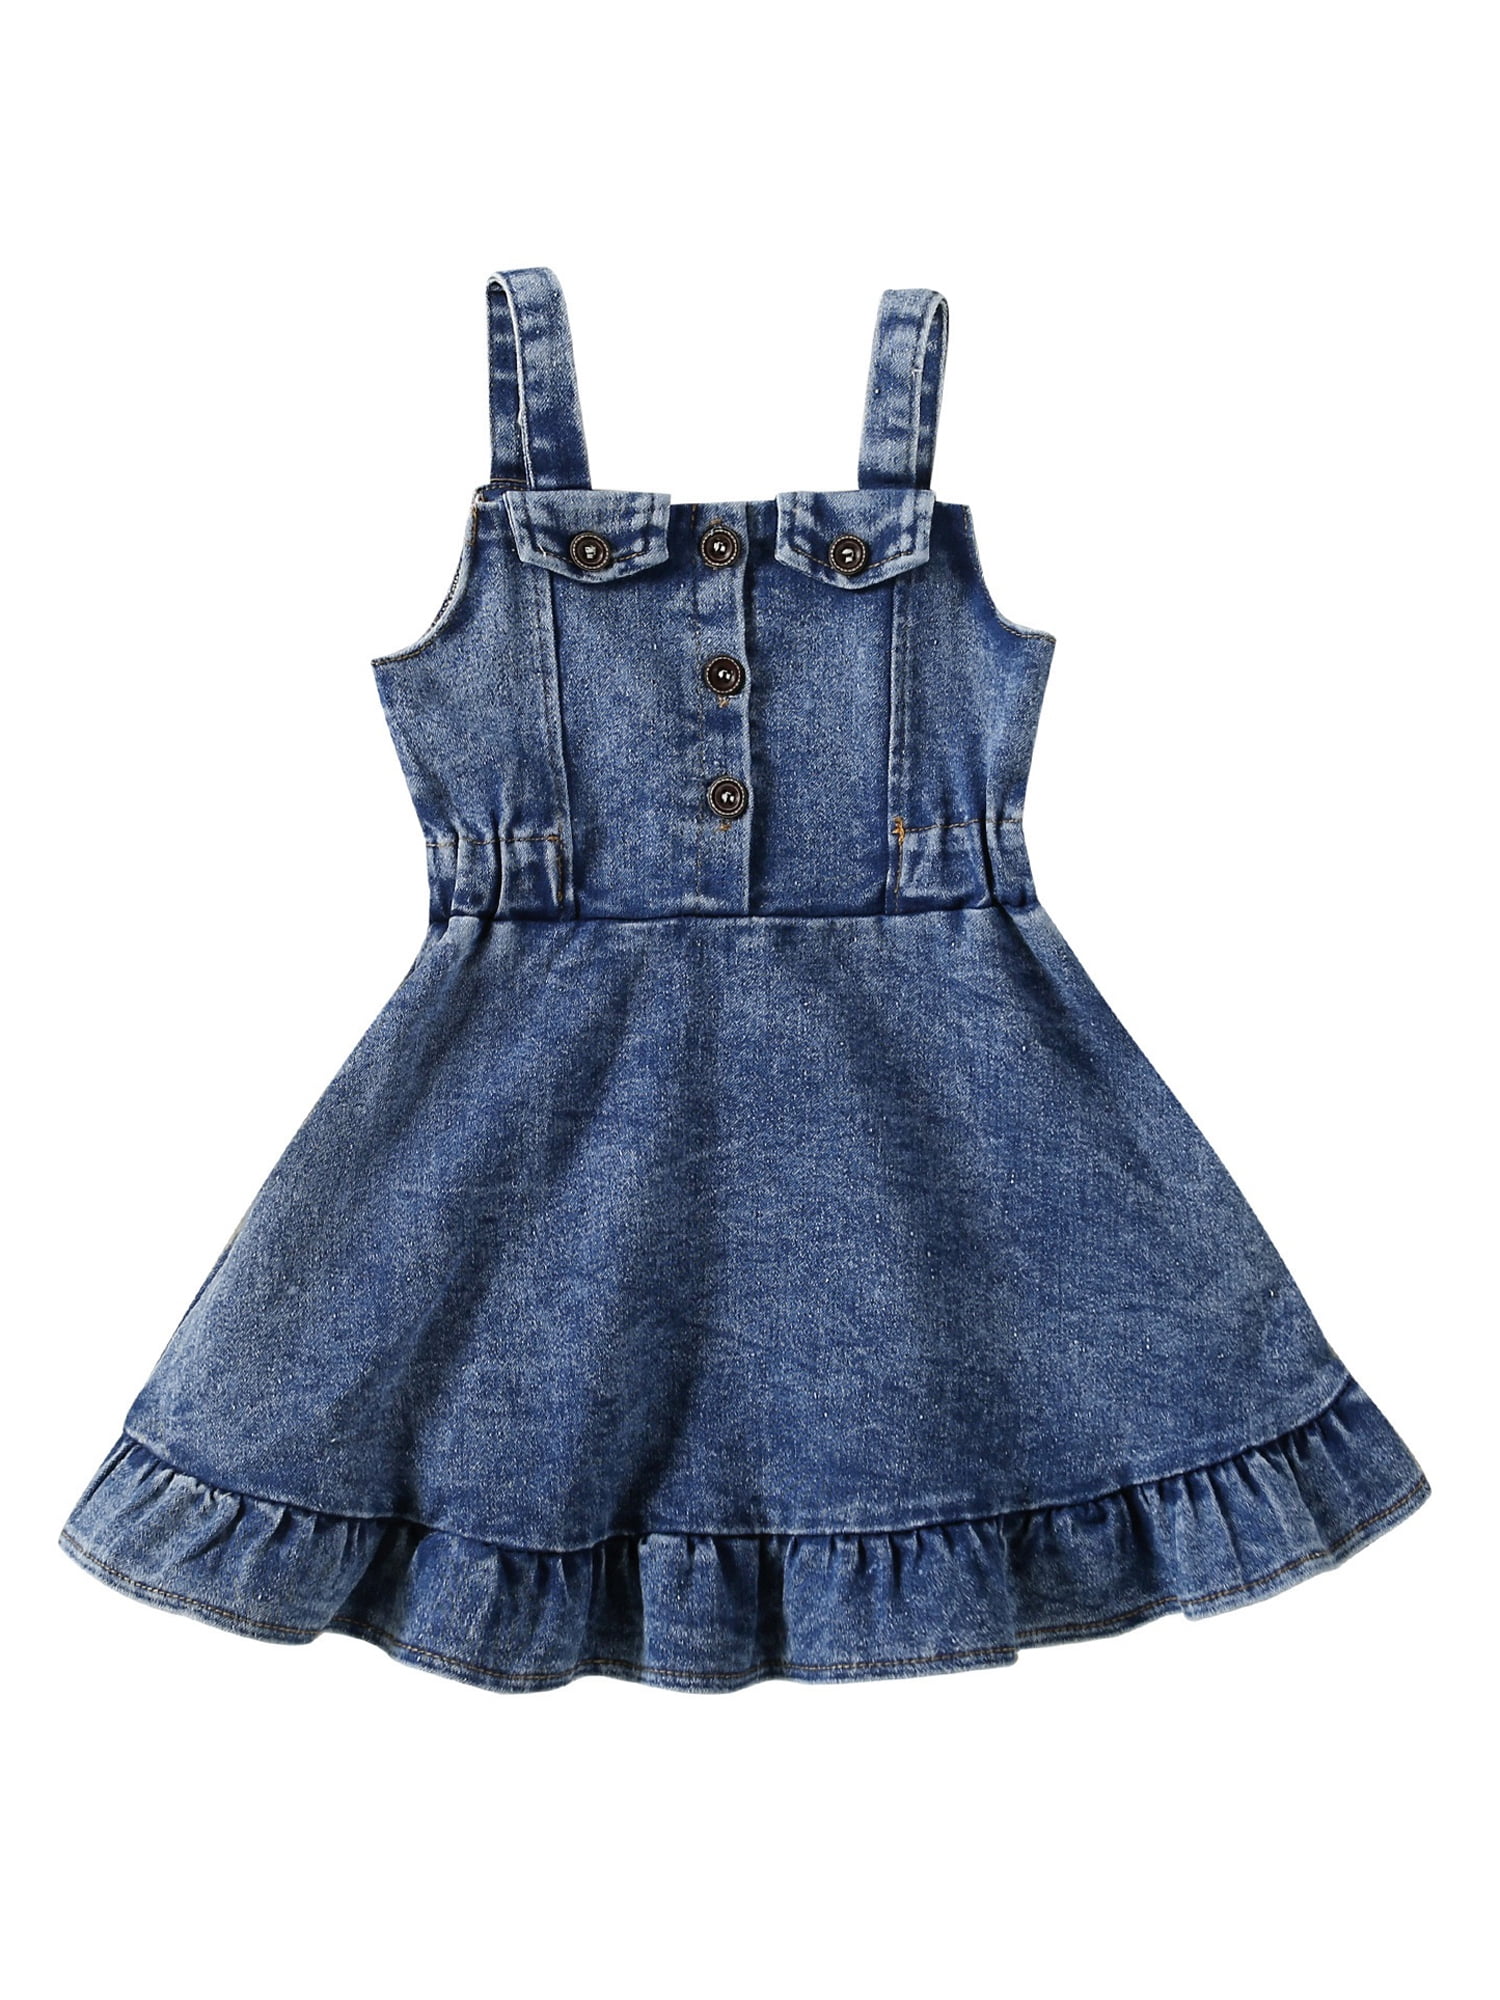 Toddler Baby Girls clothes Denim Floral Dress +Belt Kids Princess Jeans  Dress | eBay